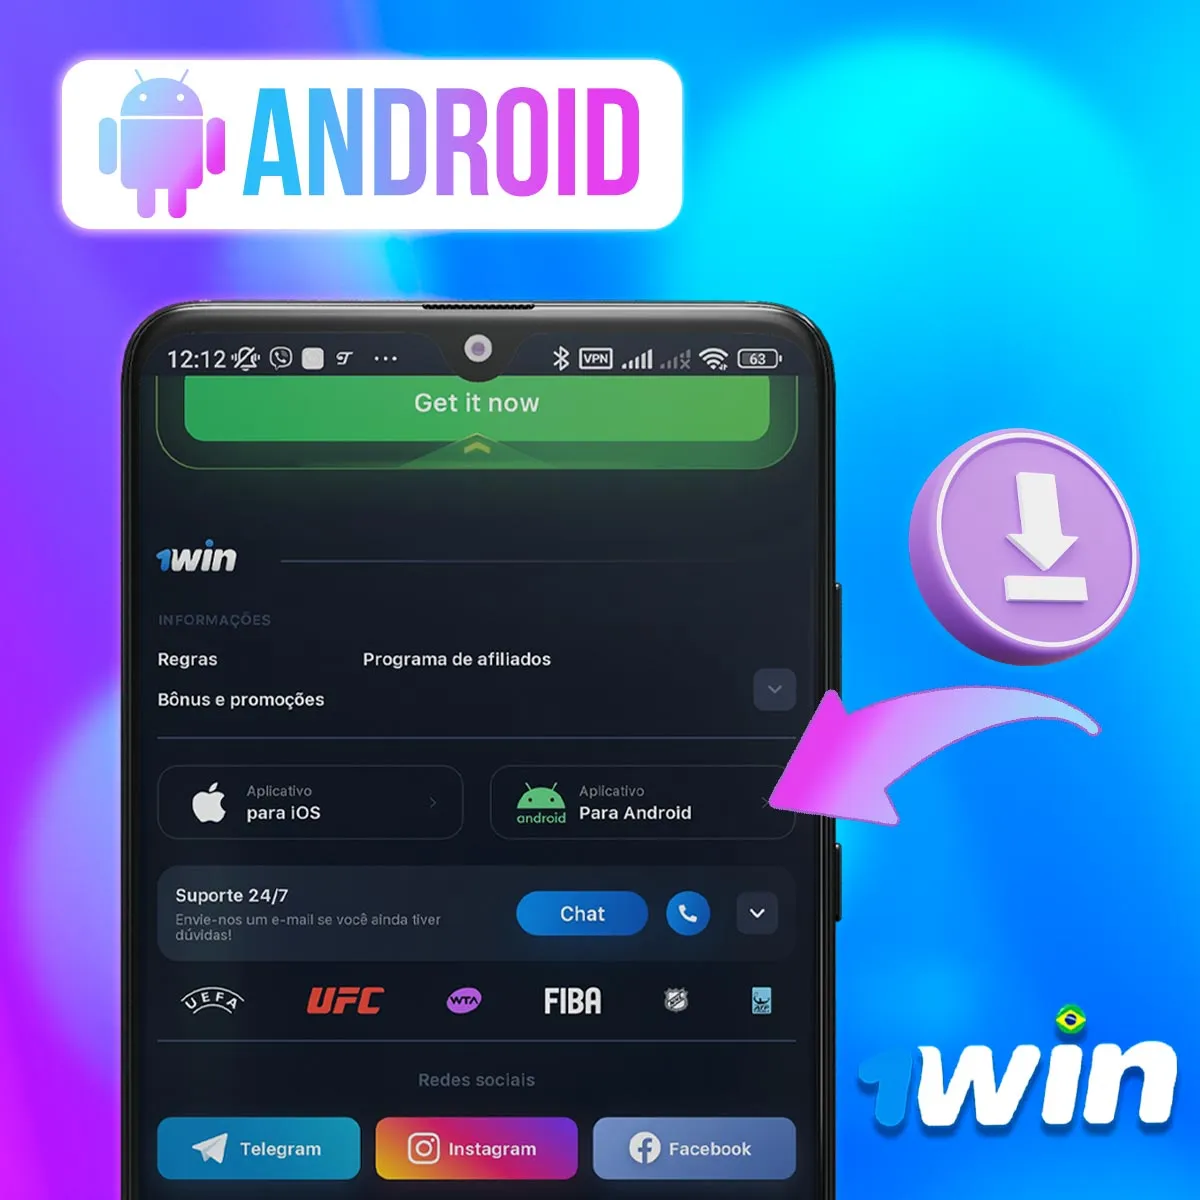 Aplicativo móvel para Android da casa de apostas 1win no mercado brasileiro